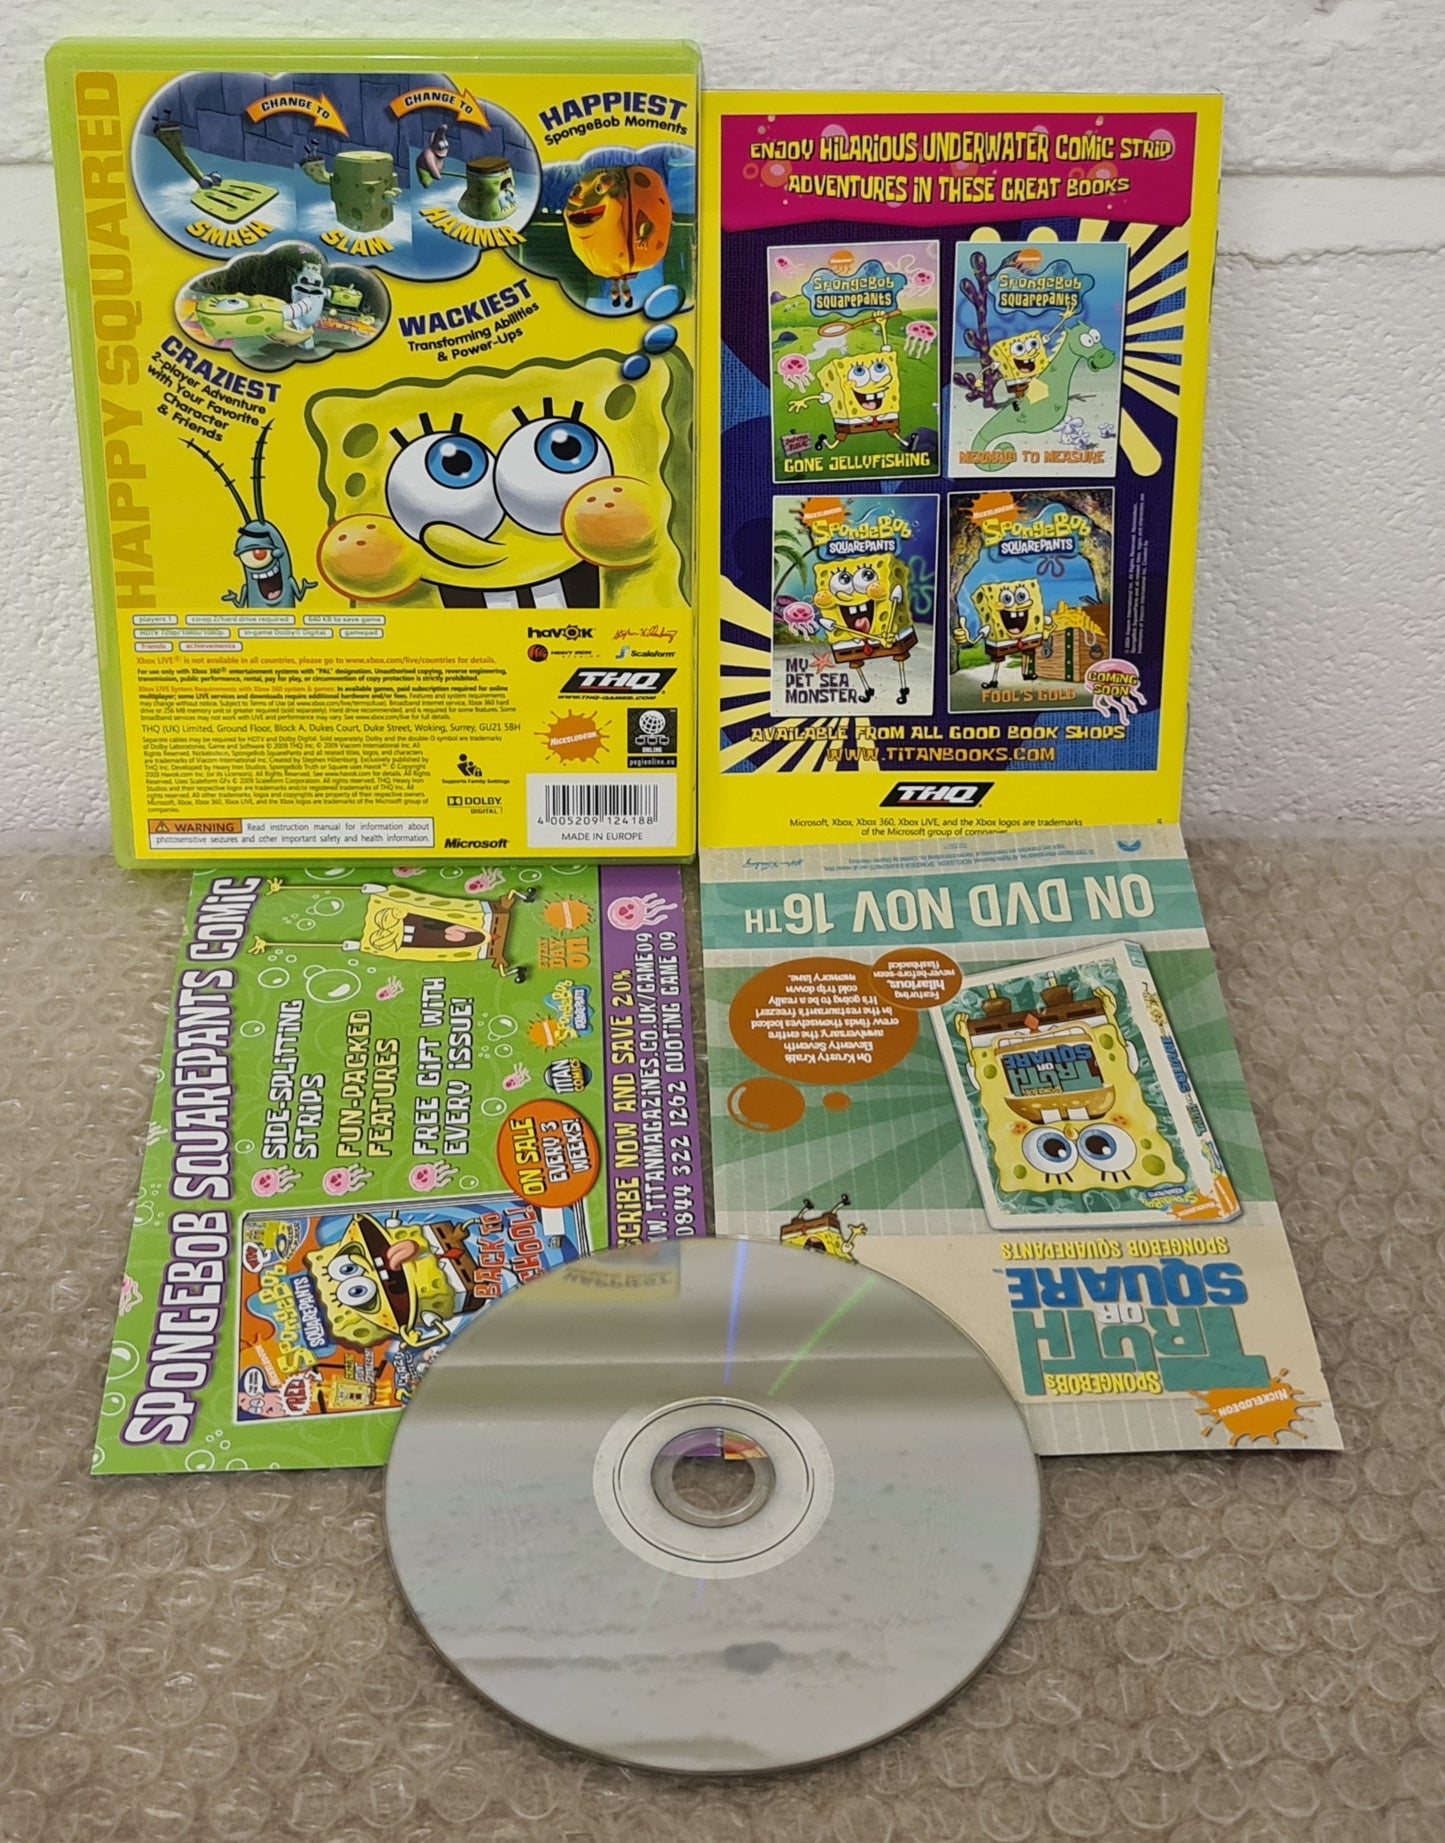 Spongebob's Truth or Square Microsoft Xbox 360 Game